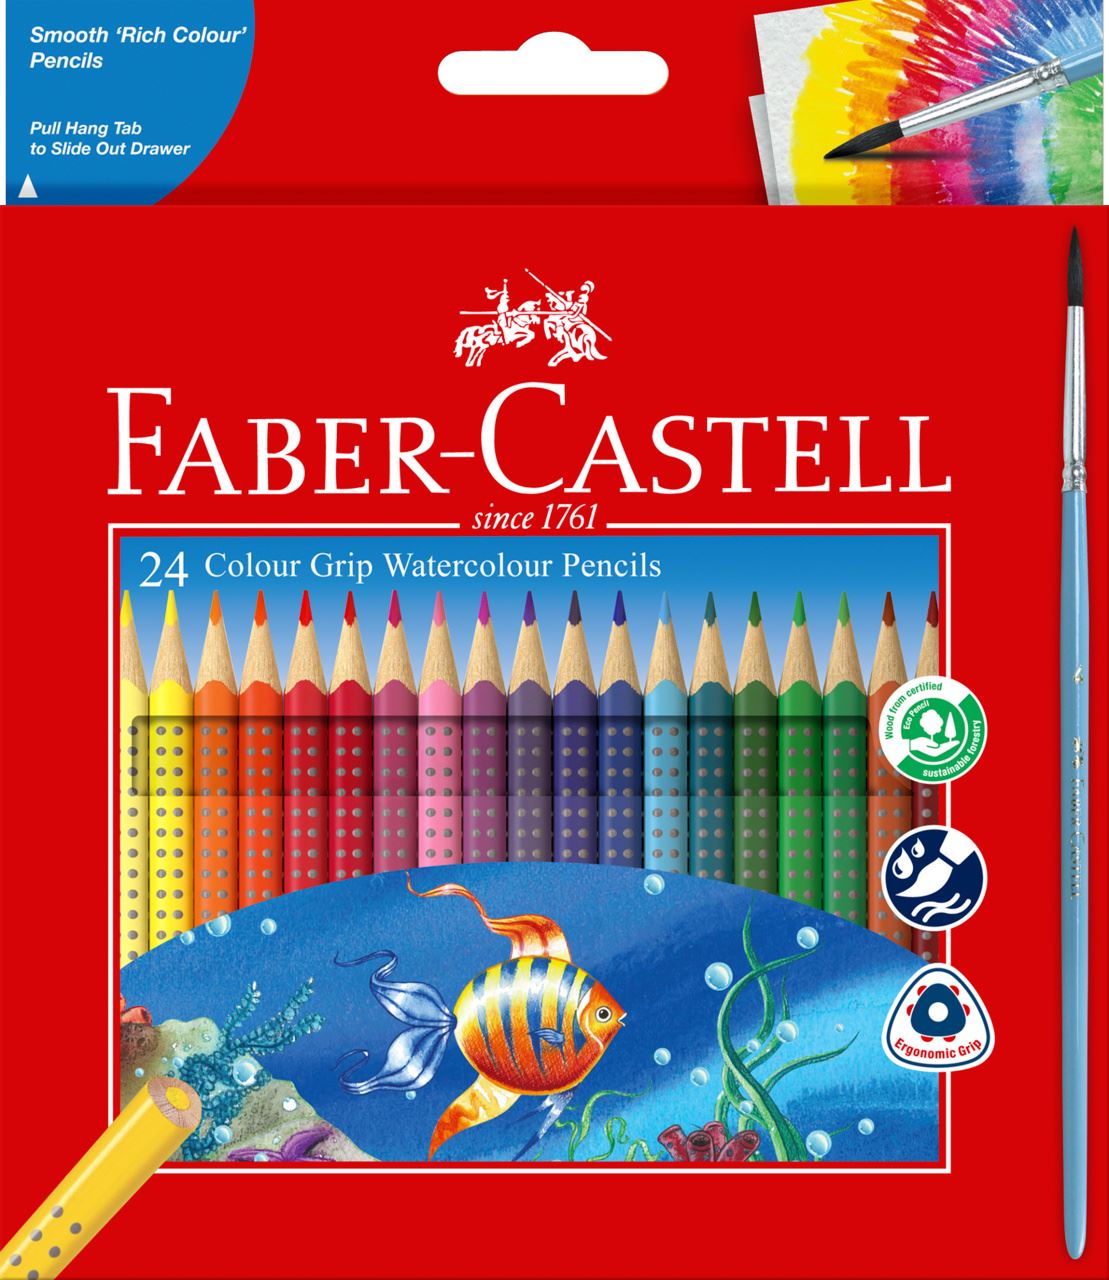 Faber-Castell - 24 Colour Grip + Brush Watercolour Pencils